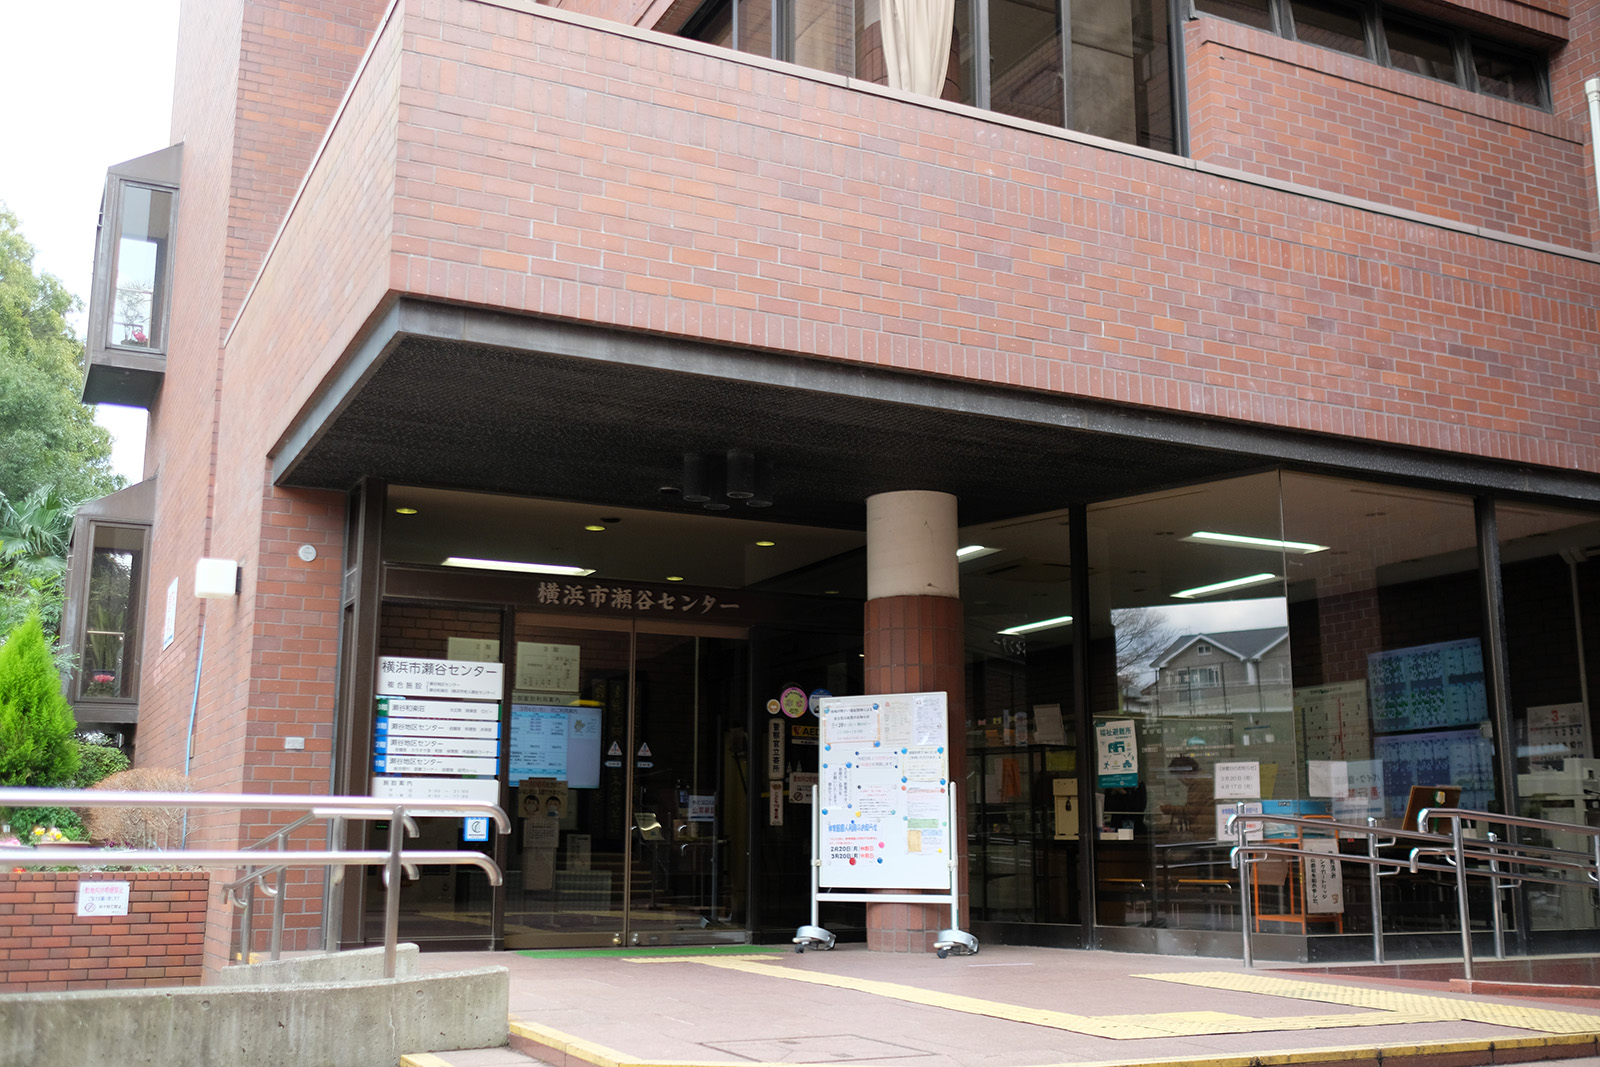 瀬谷駅から徒歩10分の場所にある横浜市瀬谷センター。